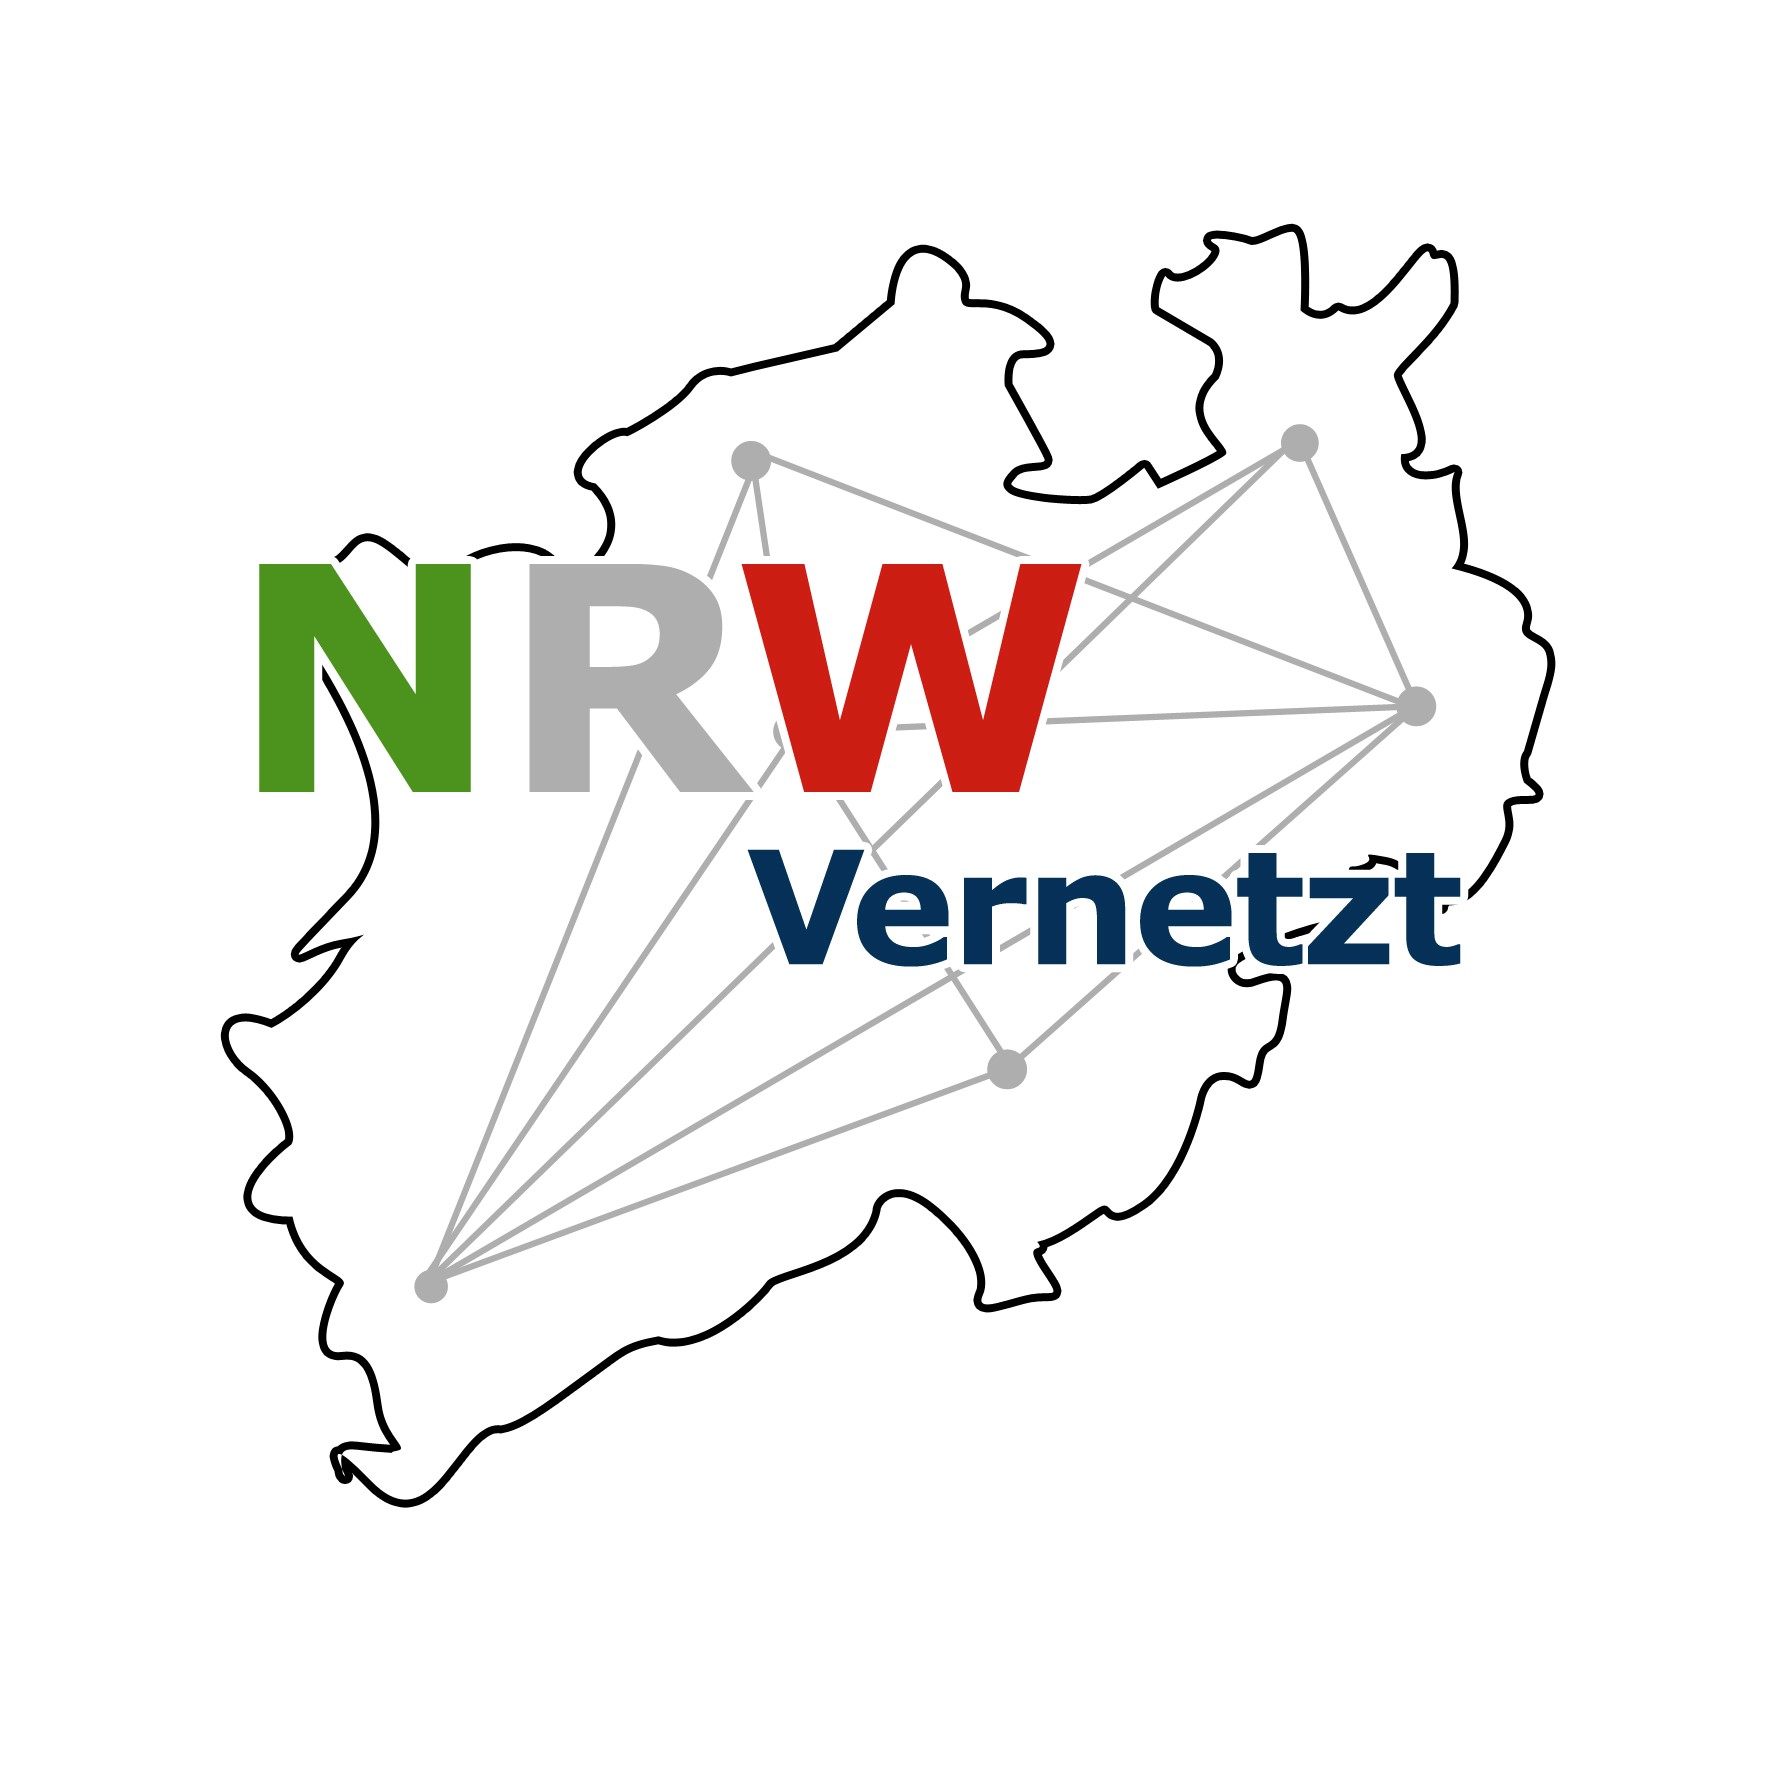 NRW Vernetzt